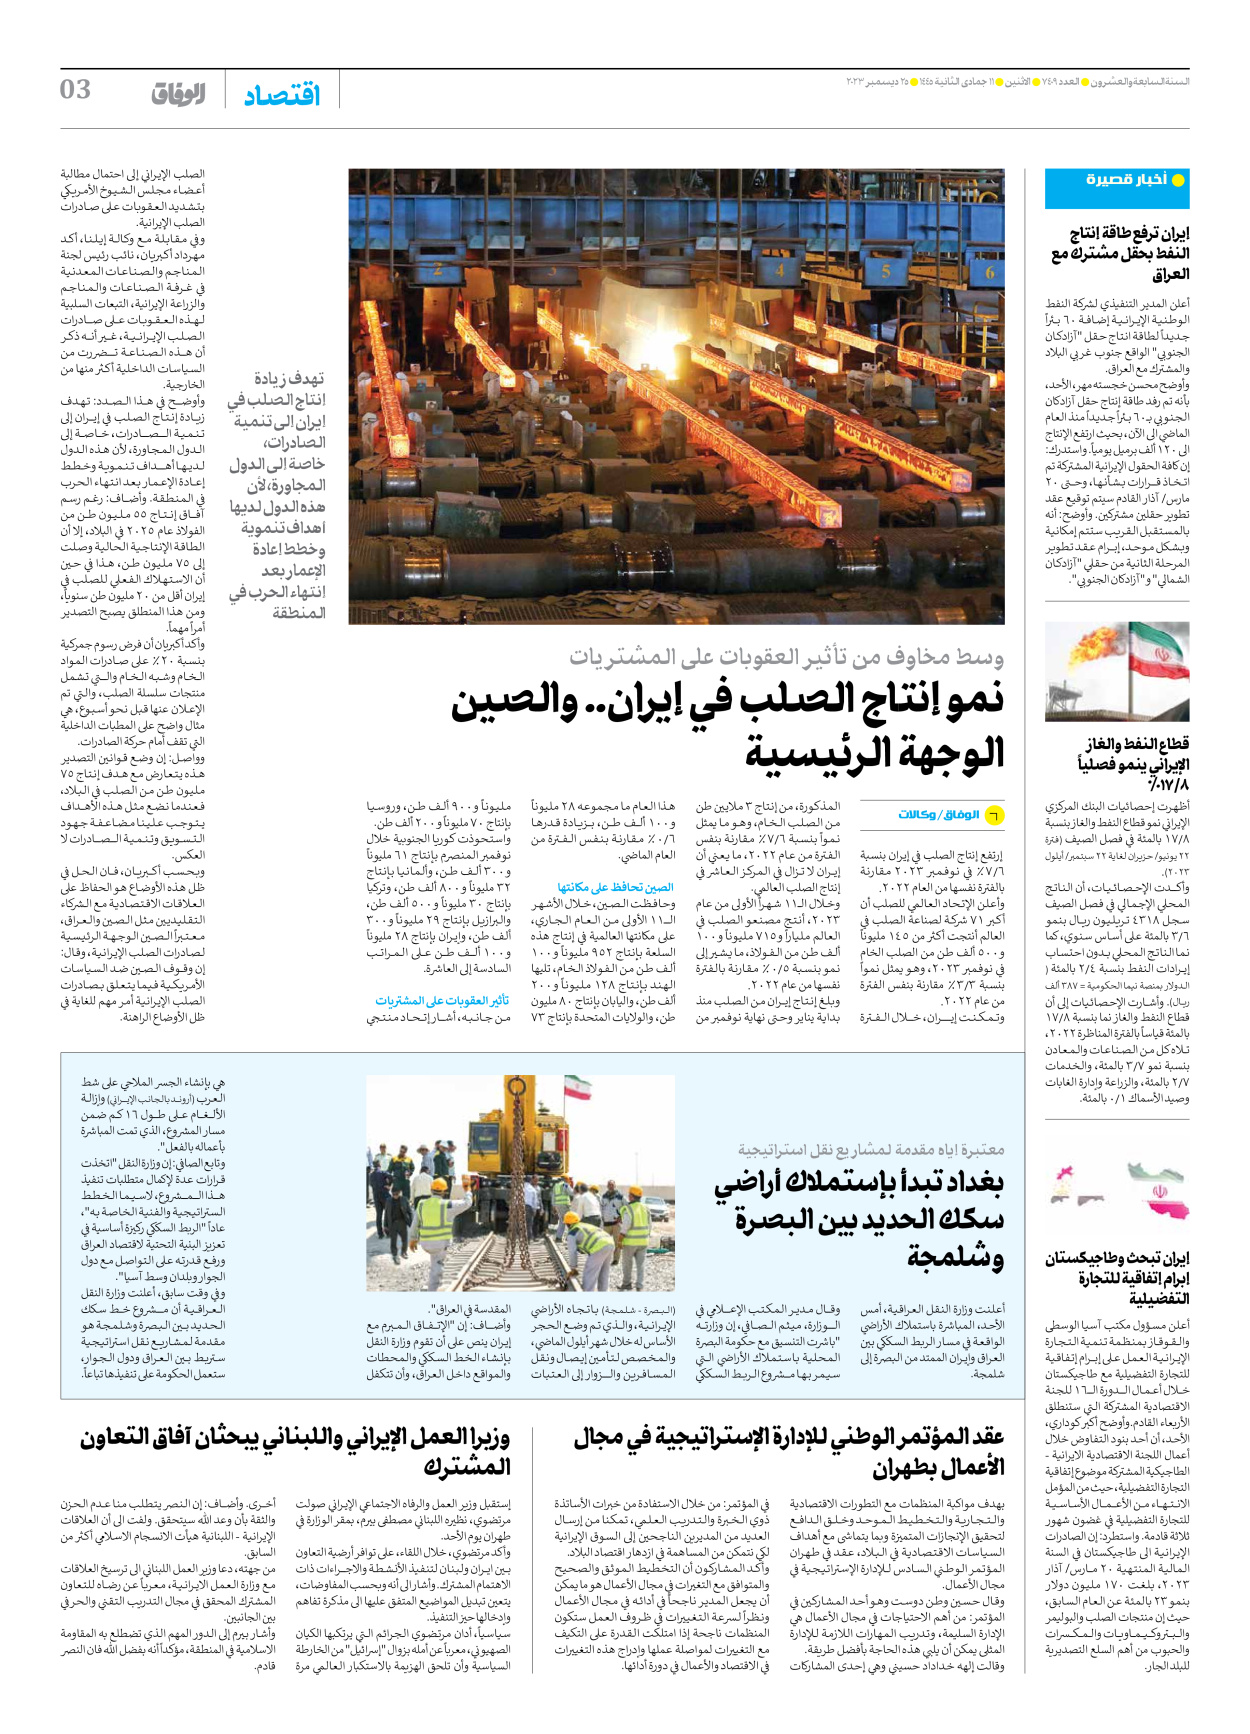 صحیفة ایران الدولیة الوفاق - العدد سبعة آلاف وأربعمائة وتسعة - ٢٥ ديسمبر ٢٠٢٣ - الصفحة ۳